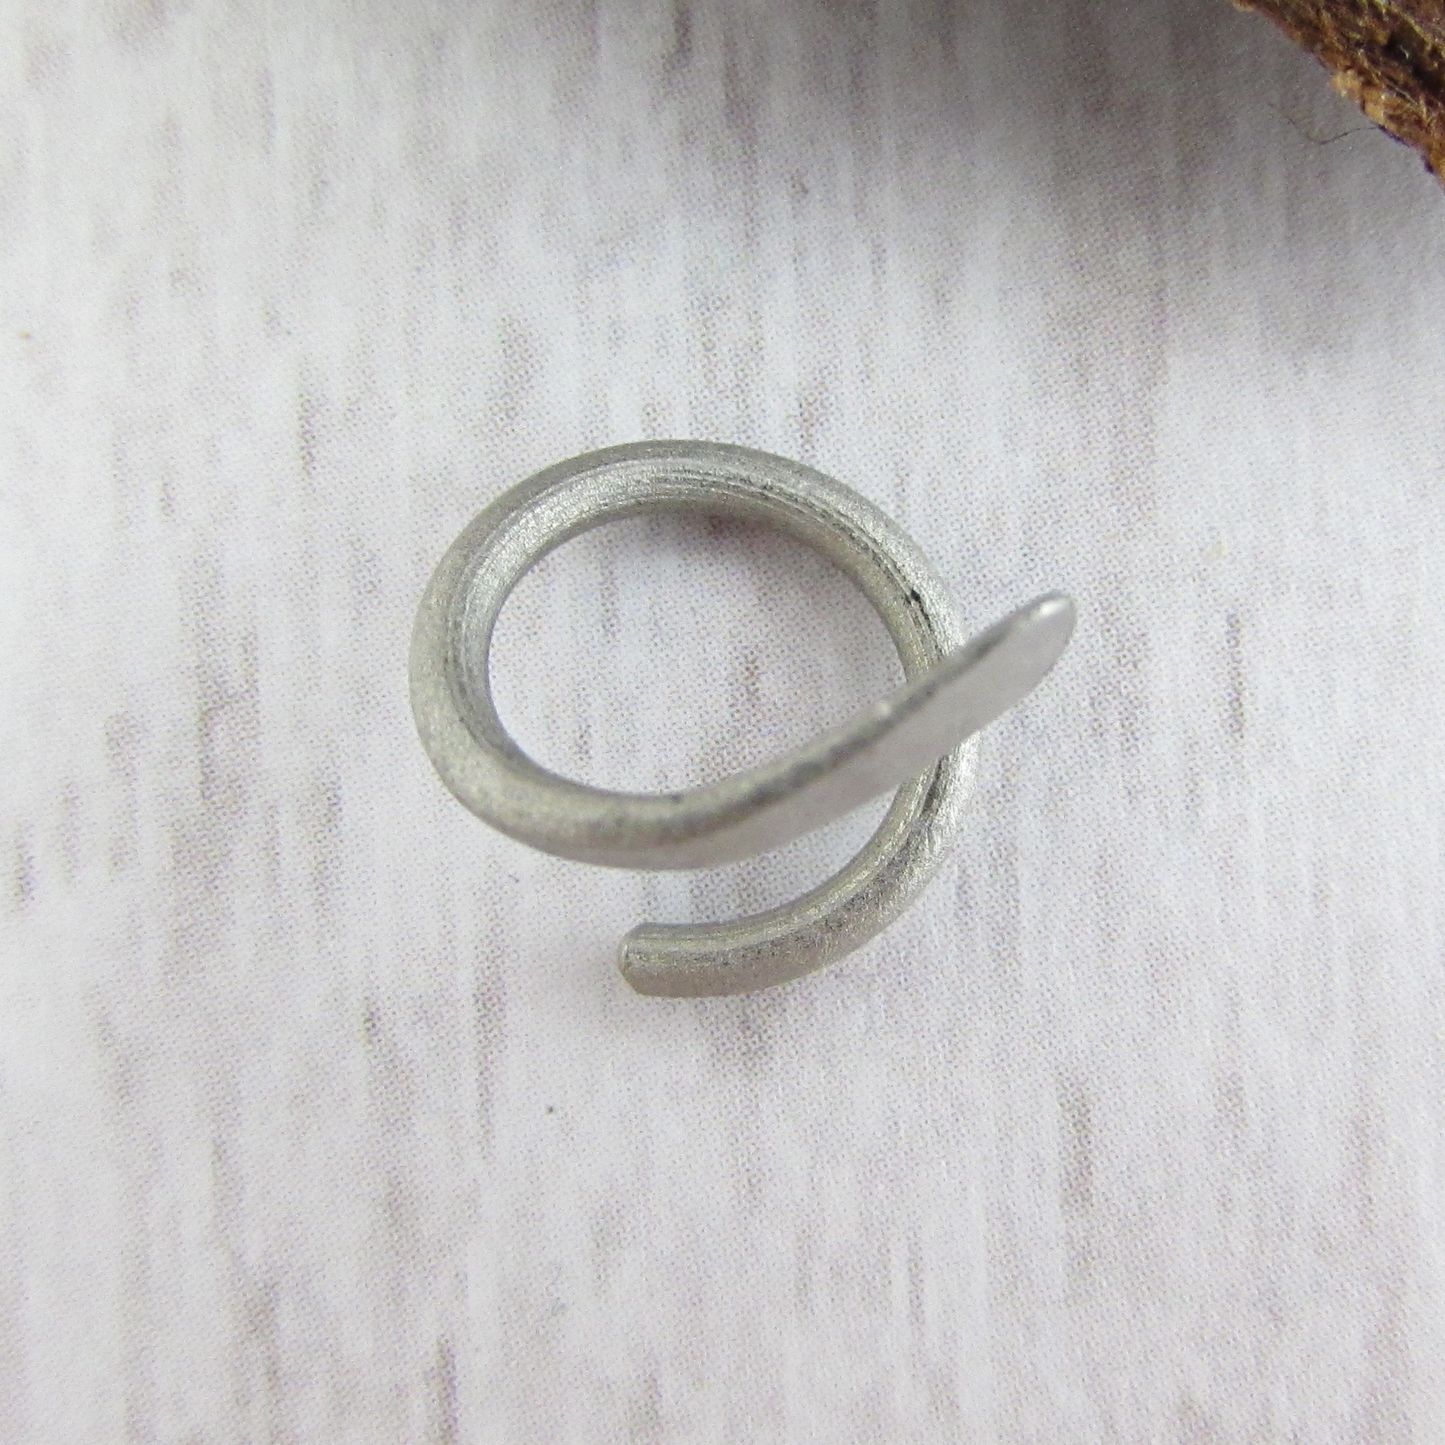 Titanium Spiral Belly Ring - 14g Natural Titanium